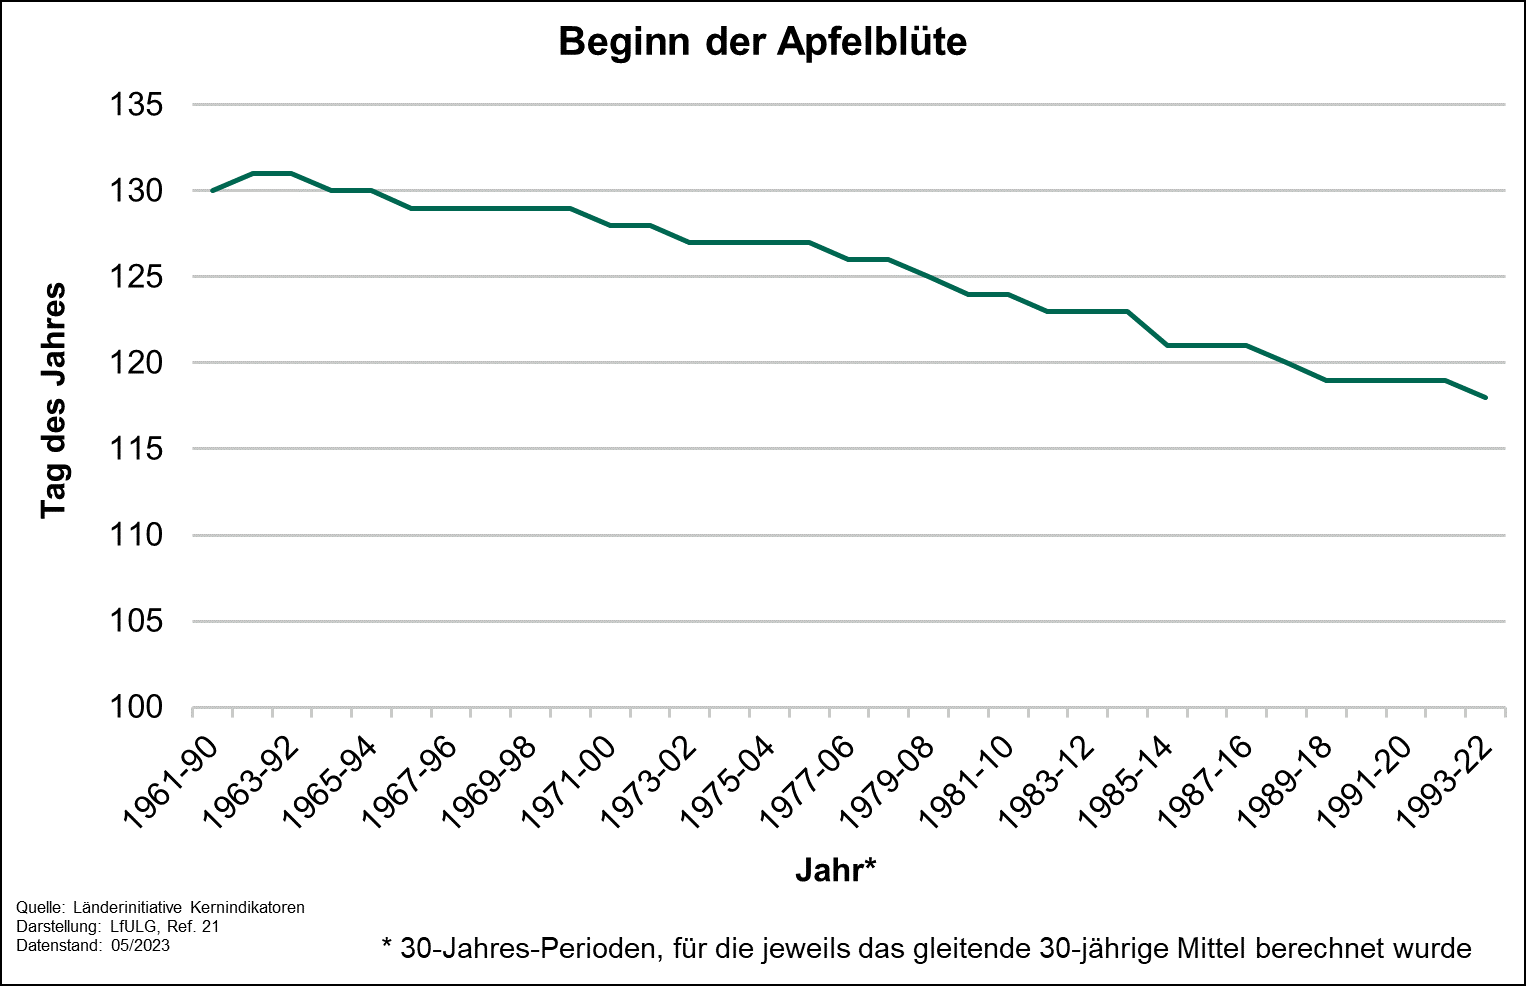 Die Grafik zeigt die Entwicklung des Beginns der Apfelblüte im dreißigjährigen gleitenden Mittel für die Perioden 1961-1990 bis 1993-2022..